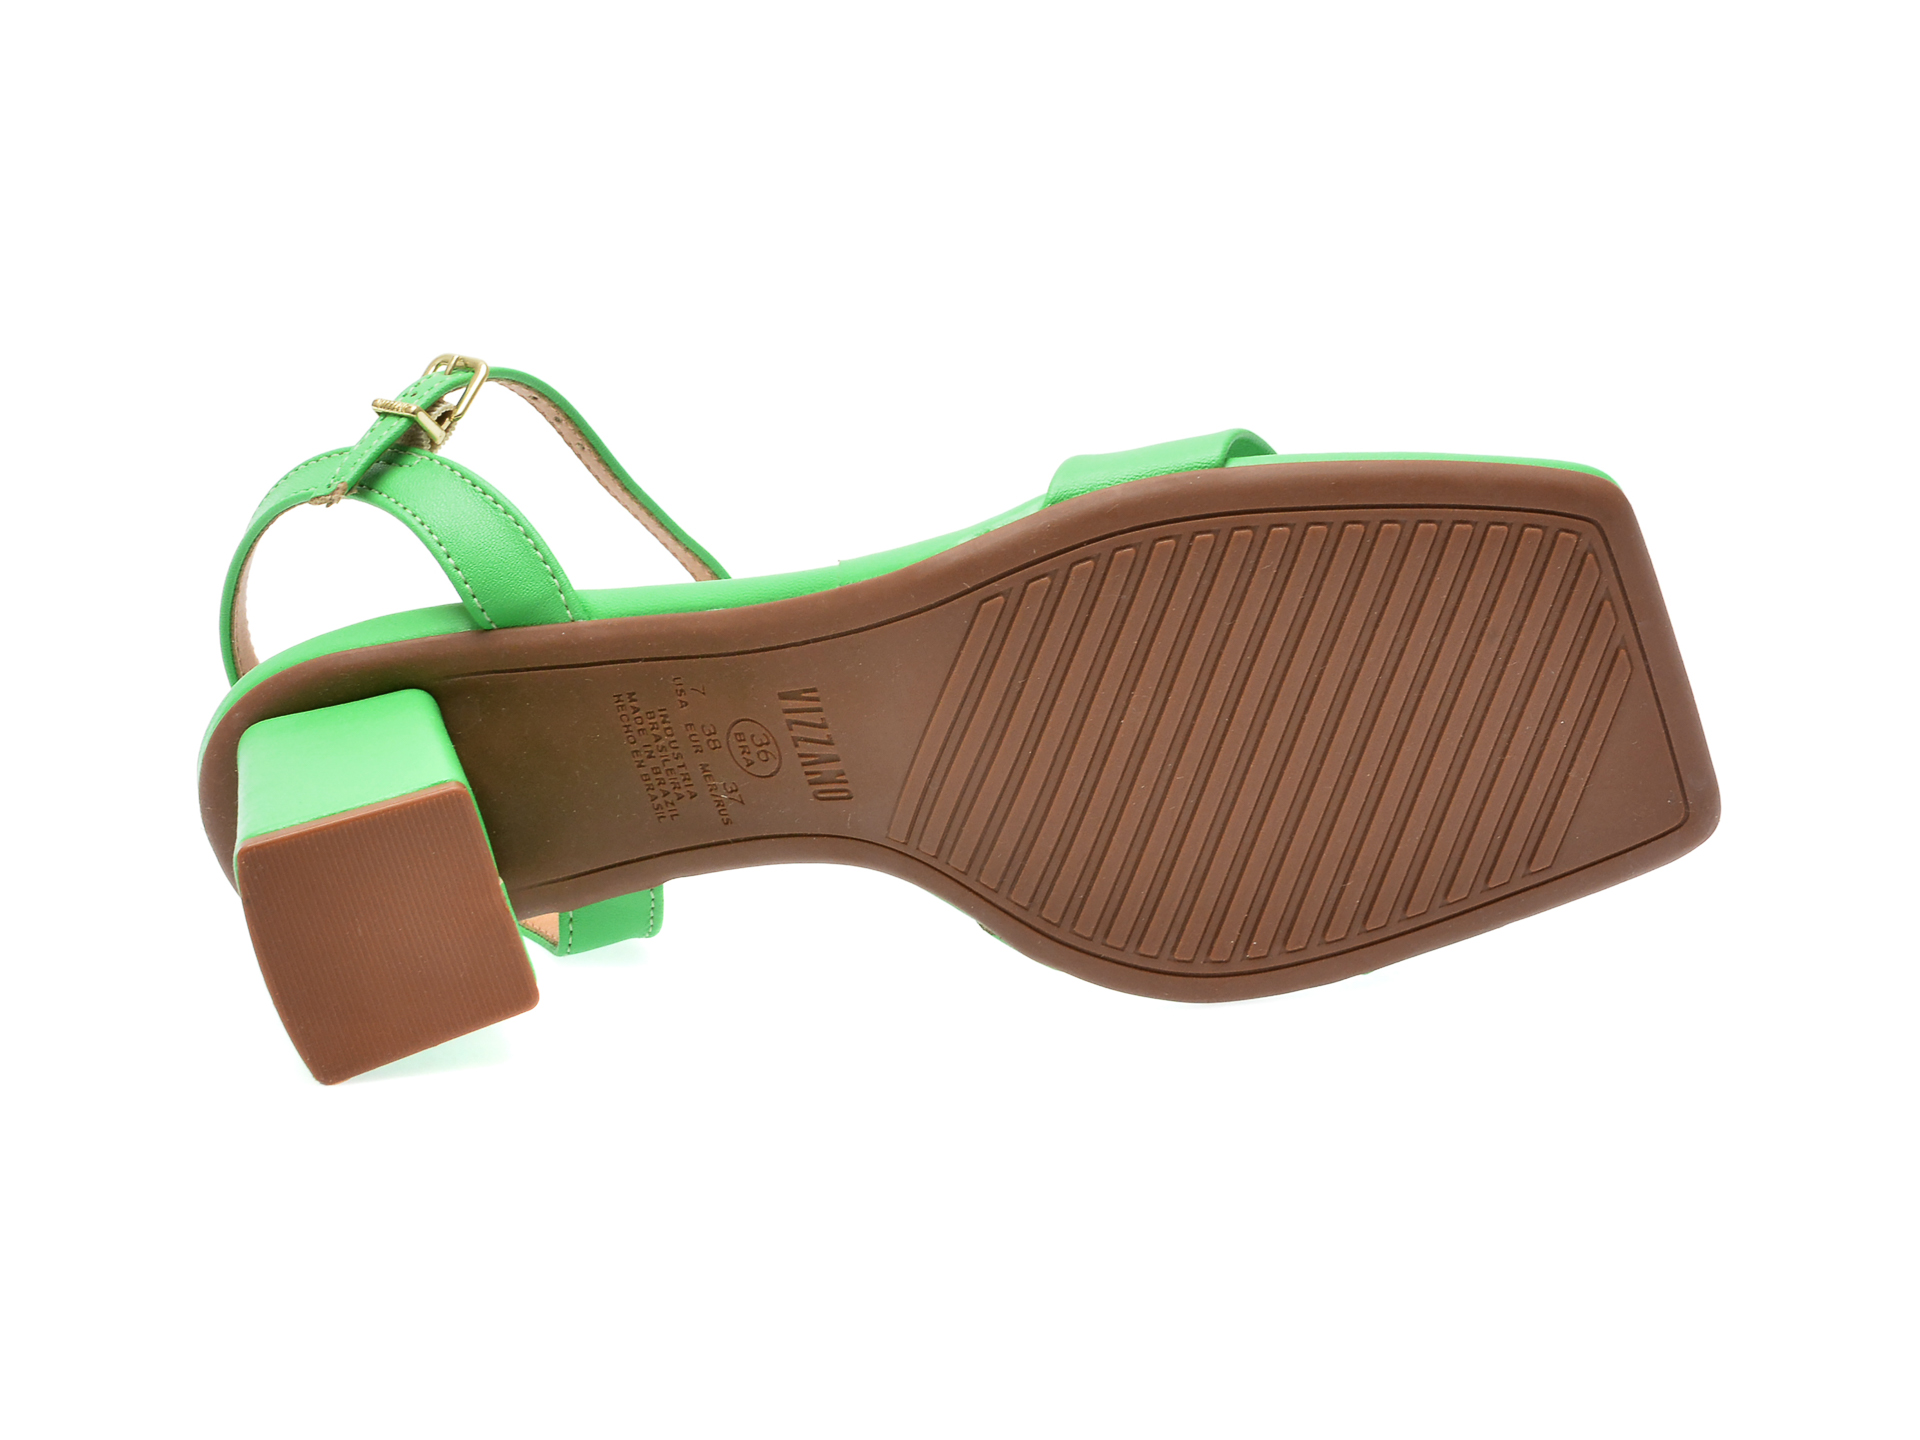 Sandale VIZZANO verzi, 6455101, din piele ecologica